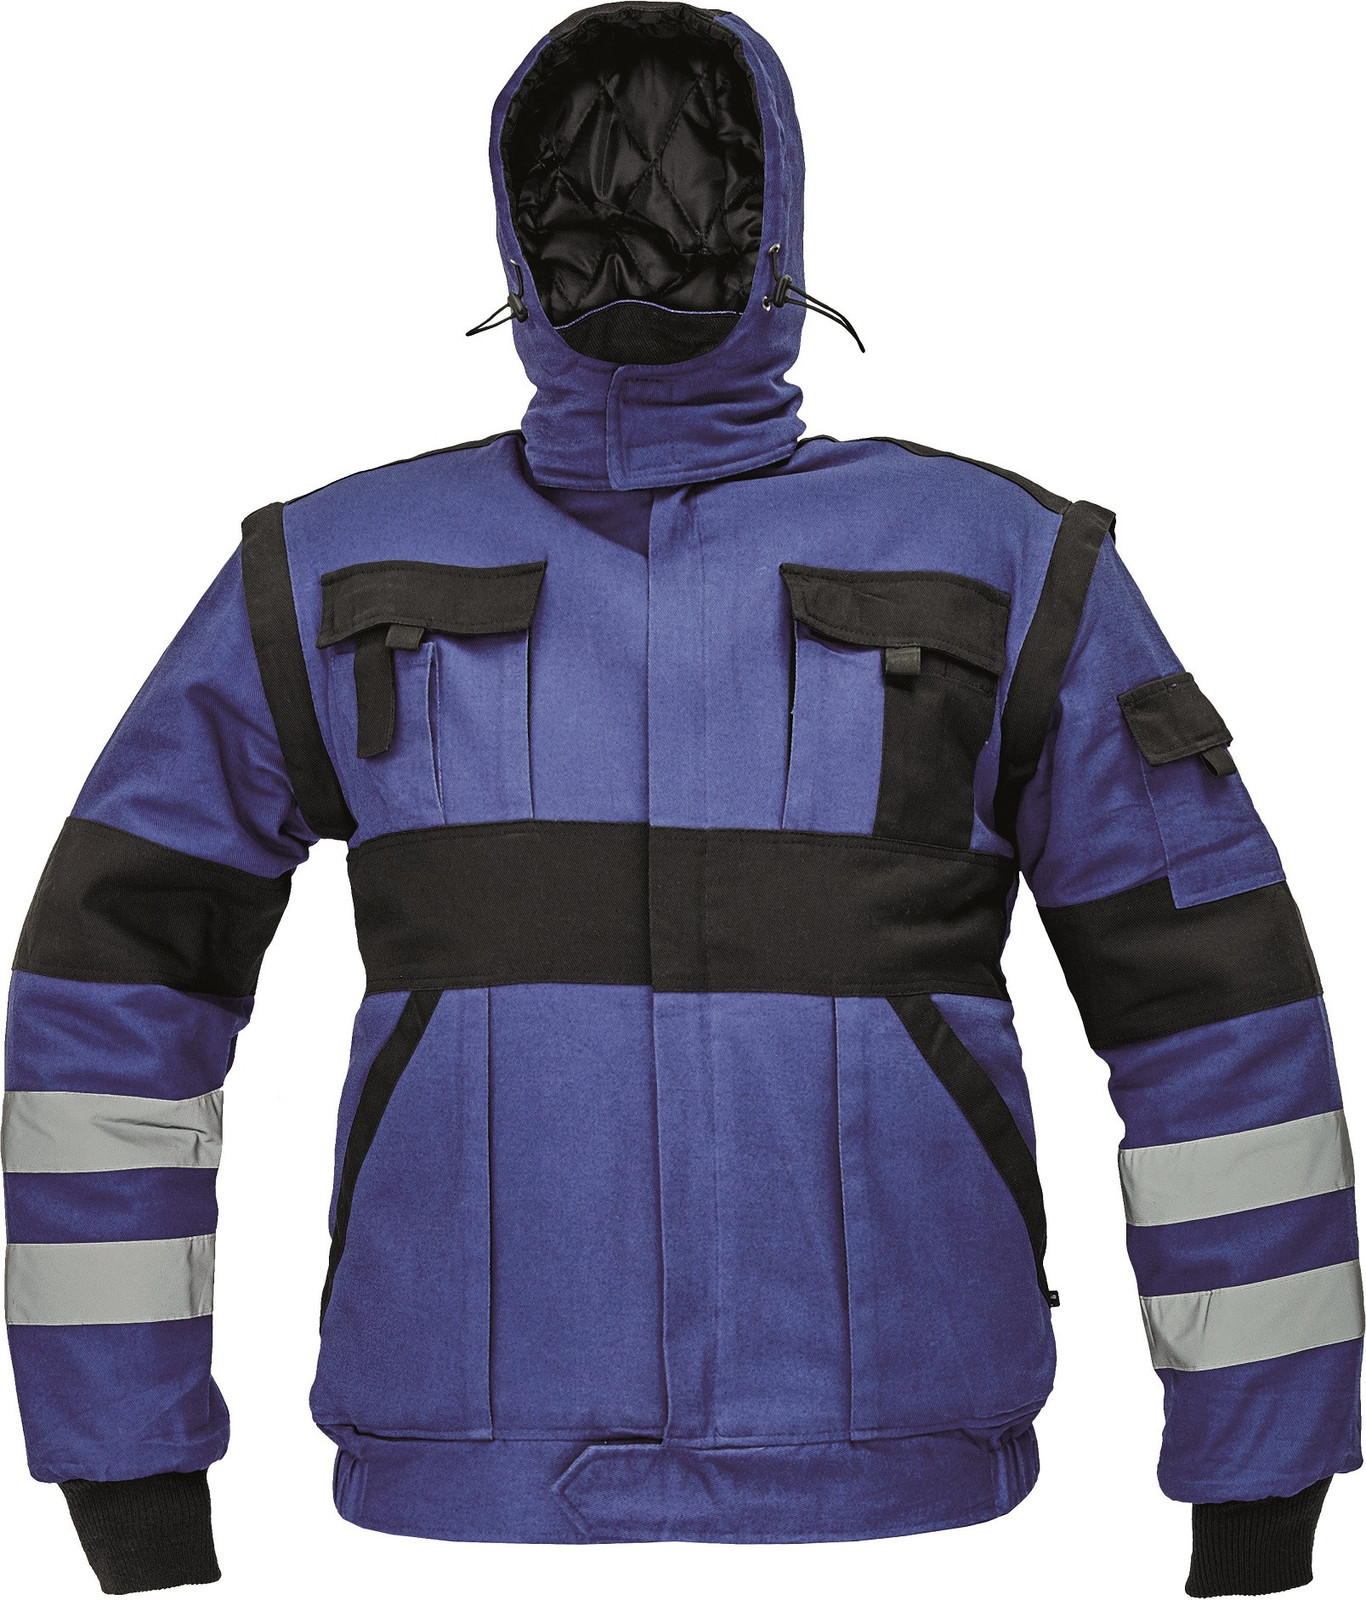 Zateplená montérková bunda Max Winter s reflexnými pruhmi 2v1 - veľkosť: 64, farba: modrá/čierna